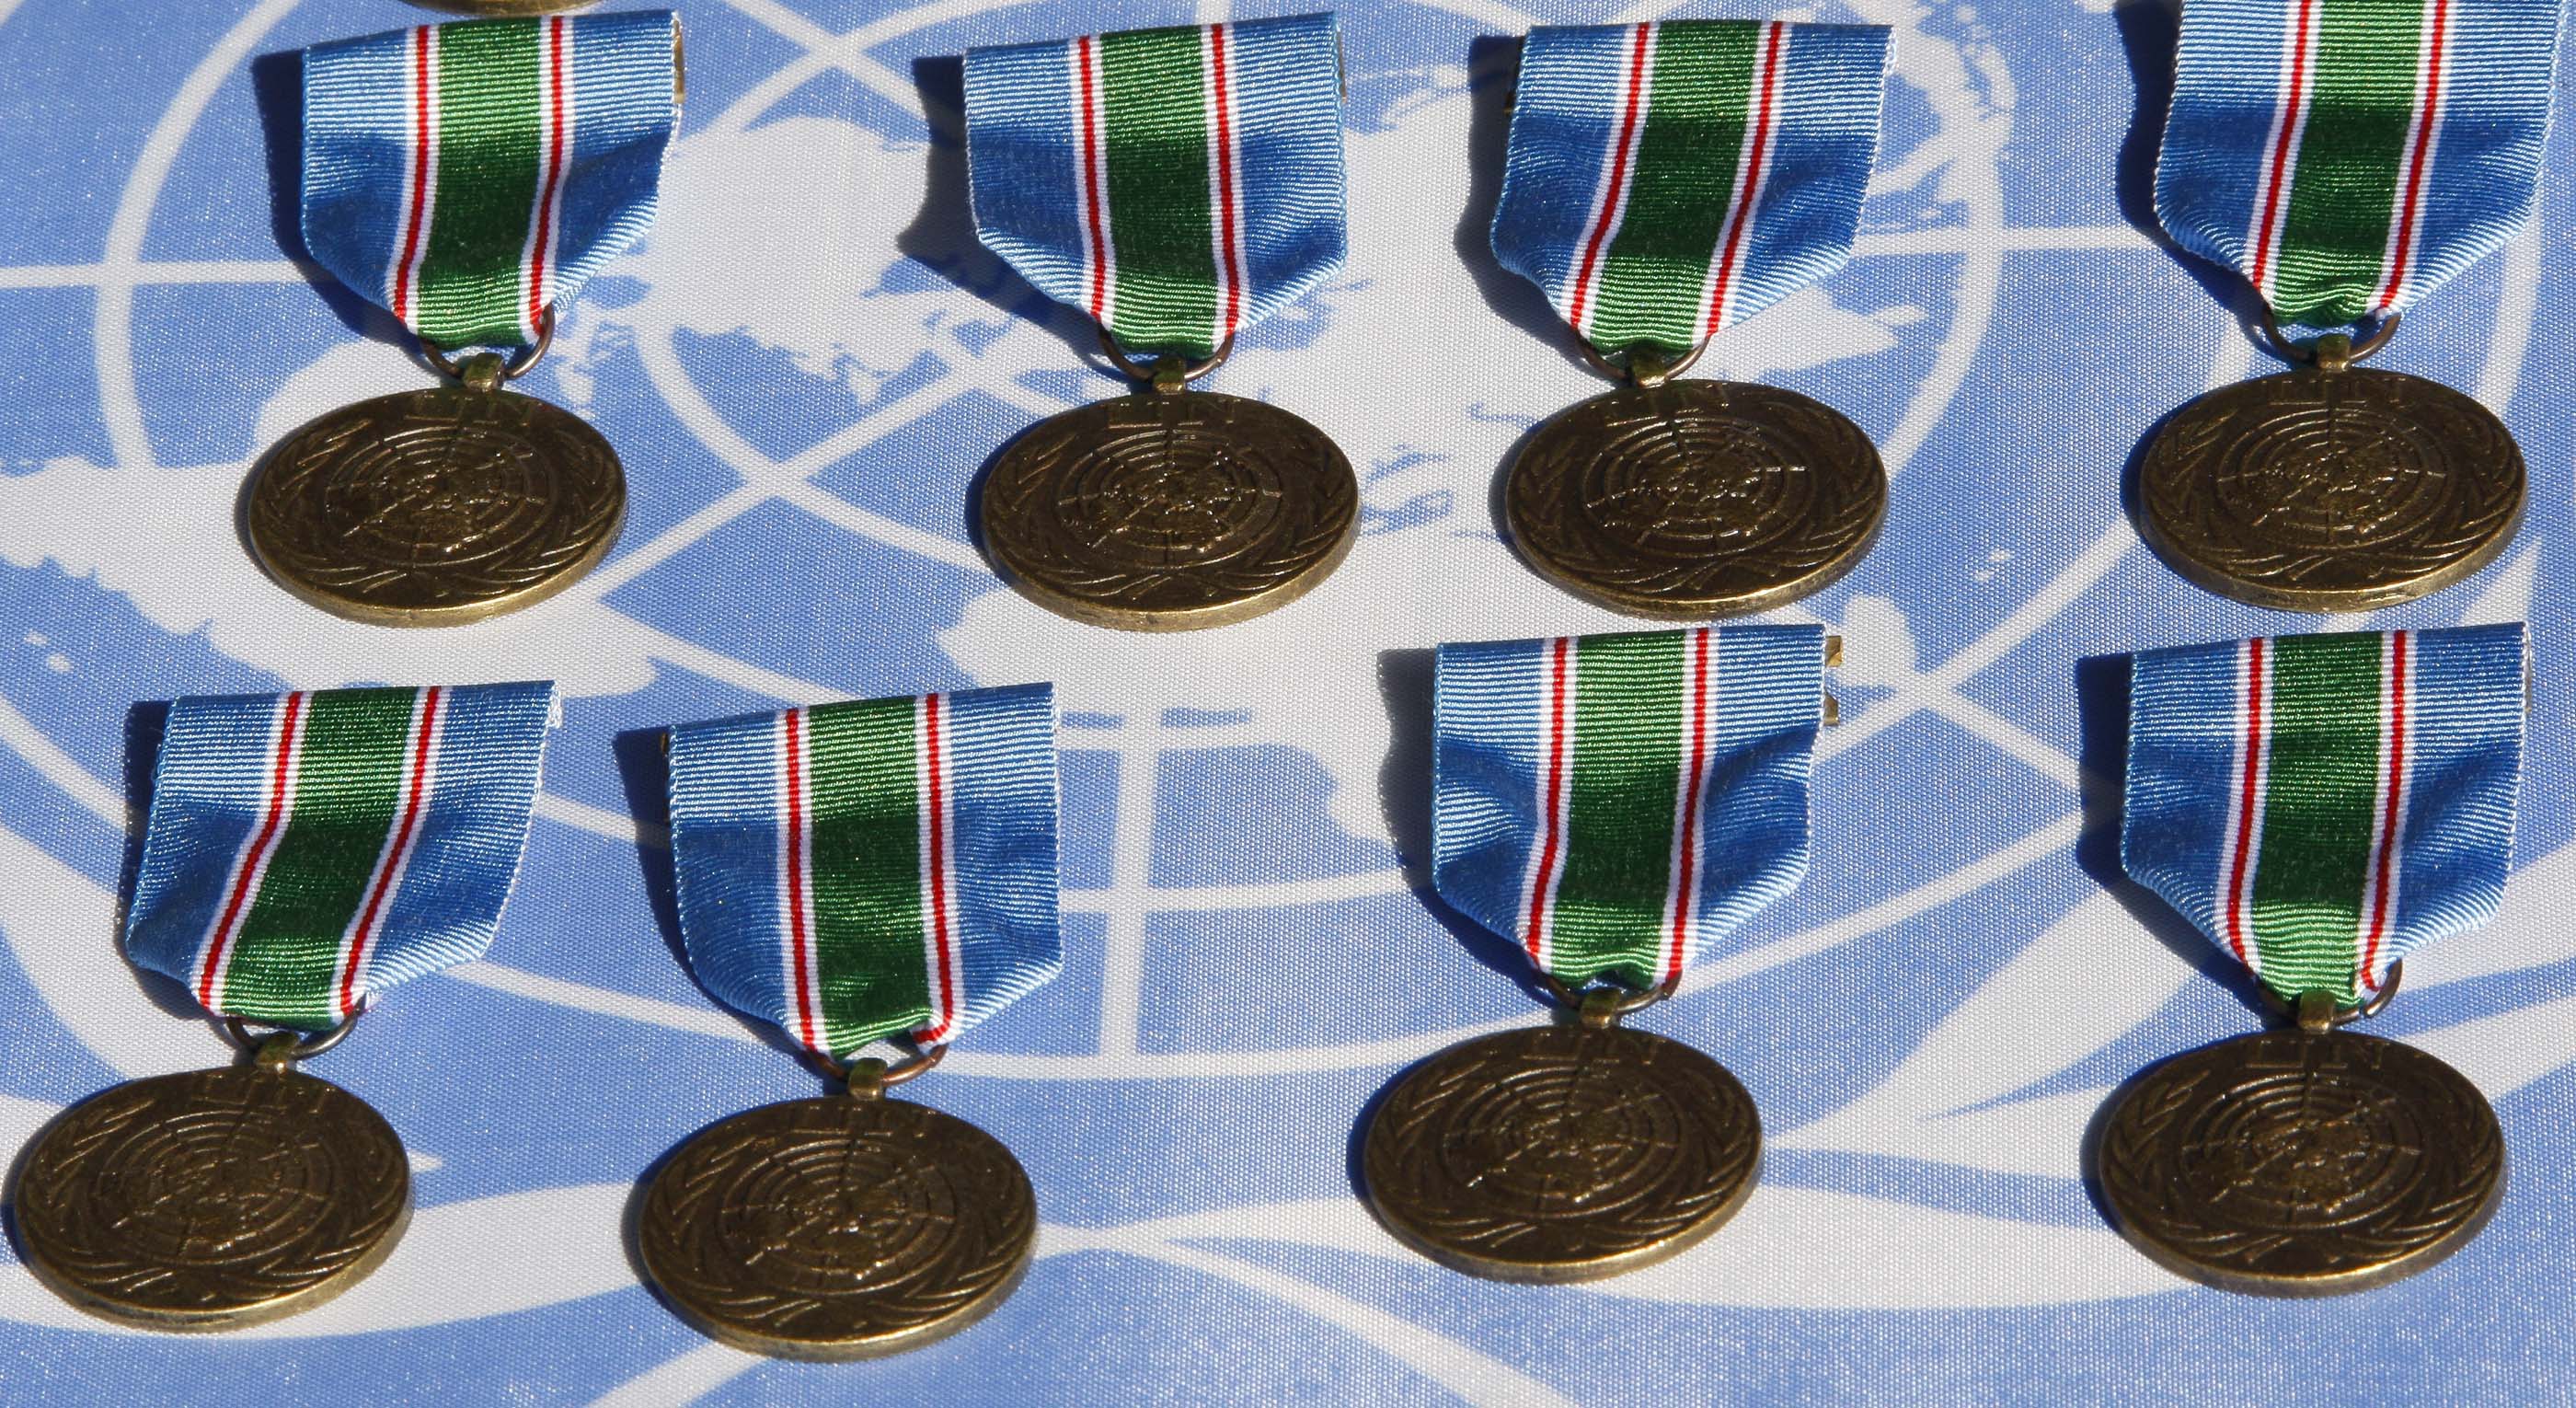 2 x Medaille ITALIEN EHRENMEDAILLE UNO-FRIEDENSTRUPPE EINSATZ LIBANON und UNIFIL